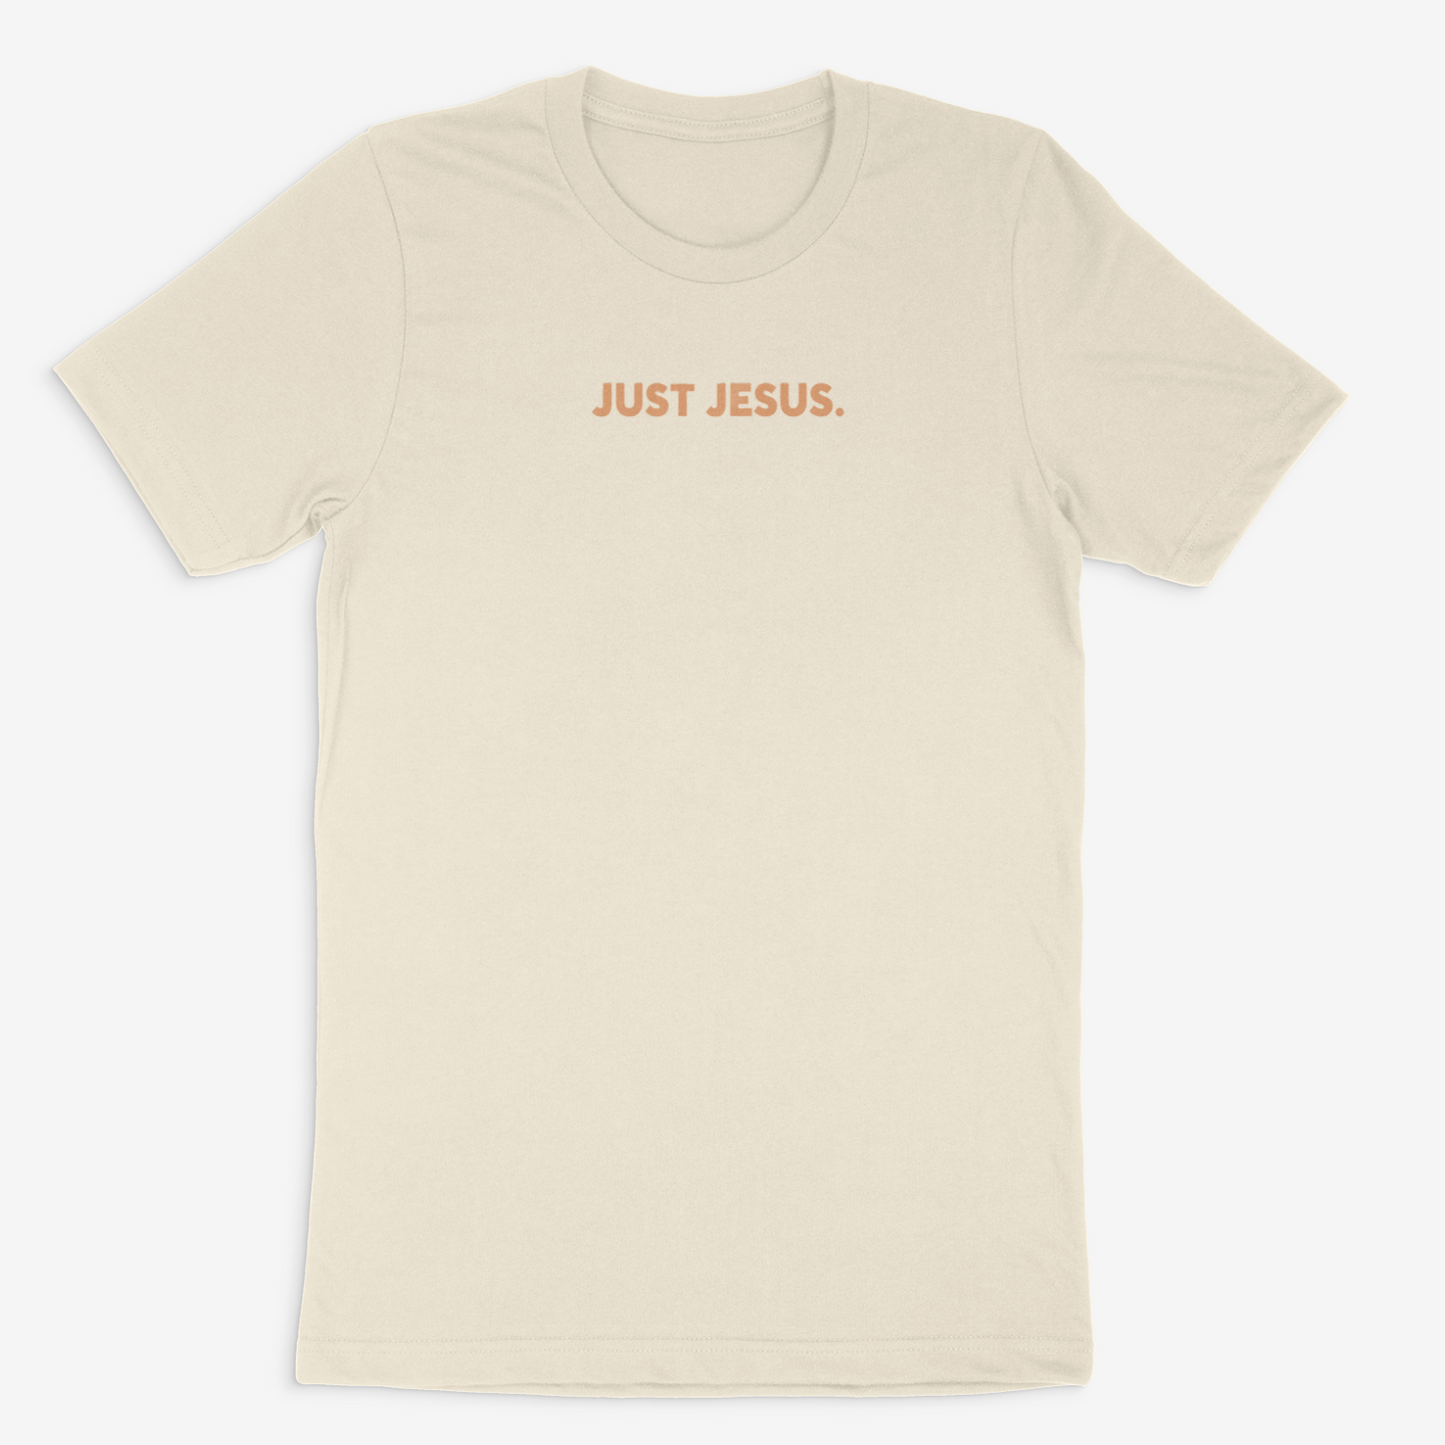 Just Jesus Tee (Tan)